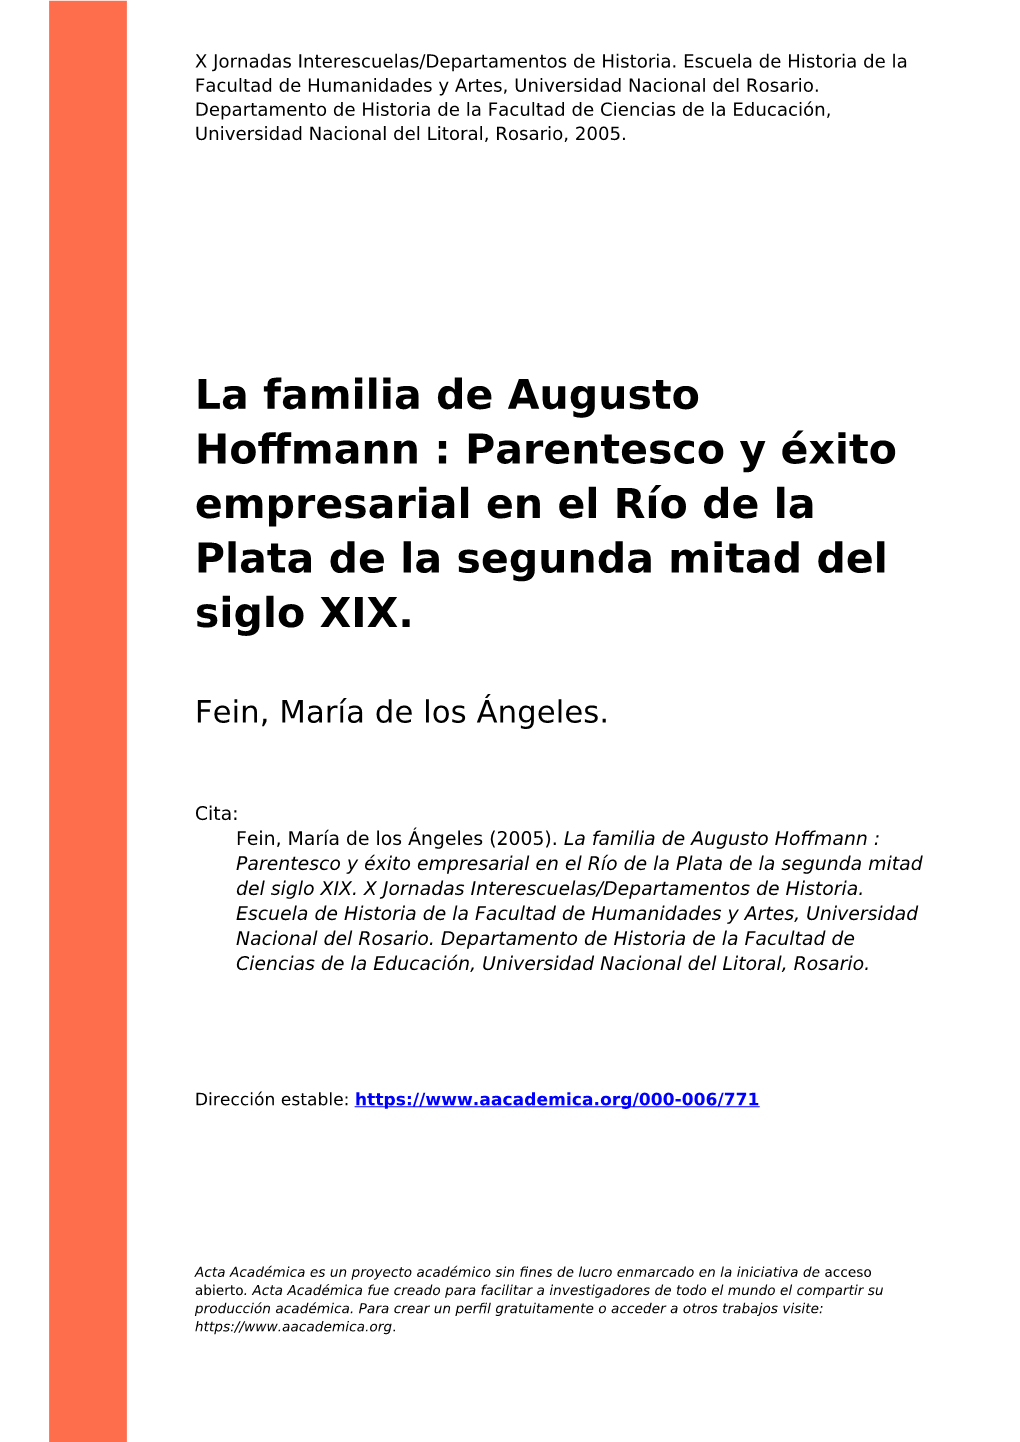 La Familia De Augusto Hoffmann : Parentesco Y Éxito Empresarial En El Río De La Plata De La Segunda Mitad Del Siglo XIX”